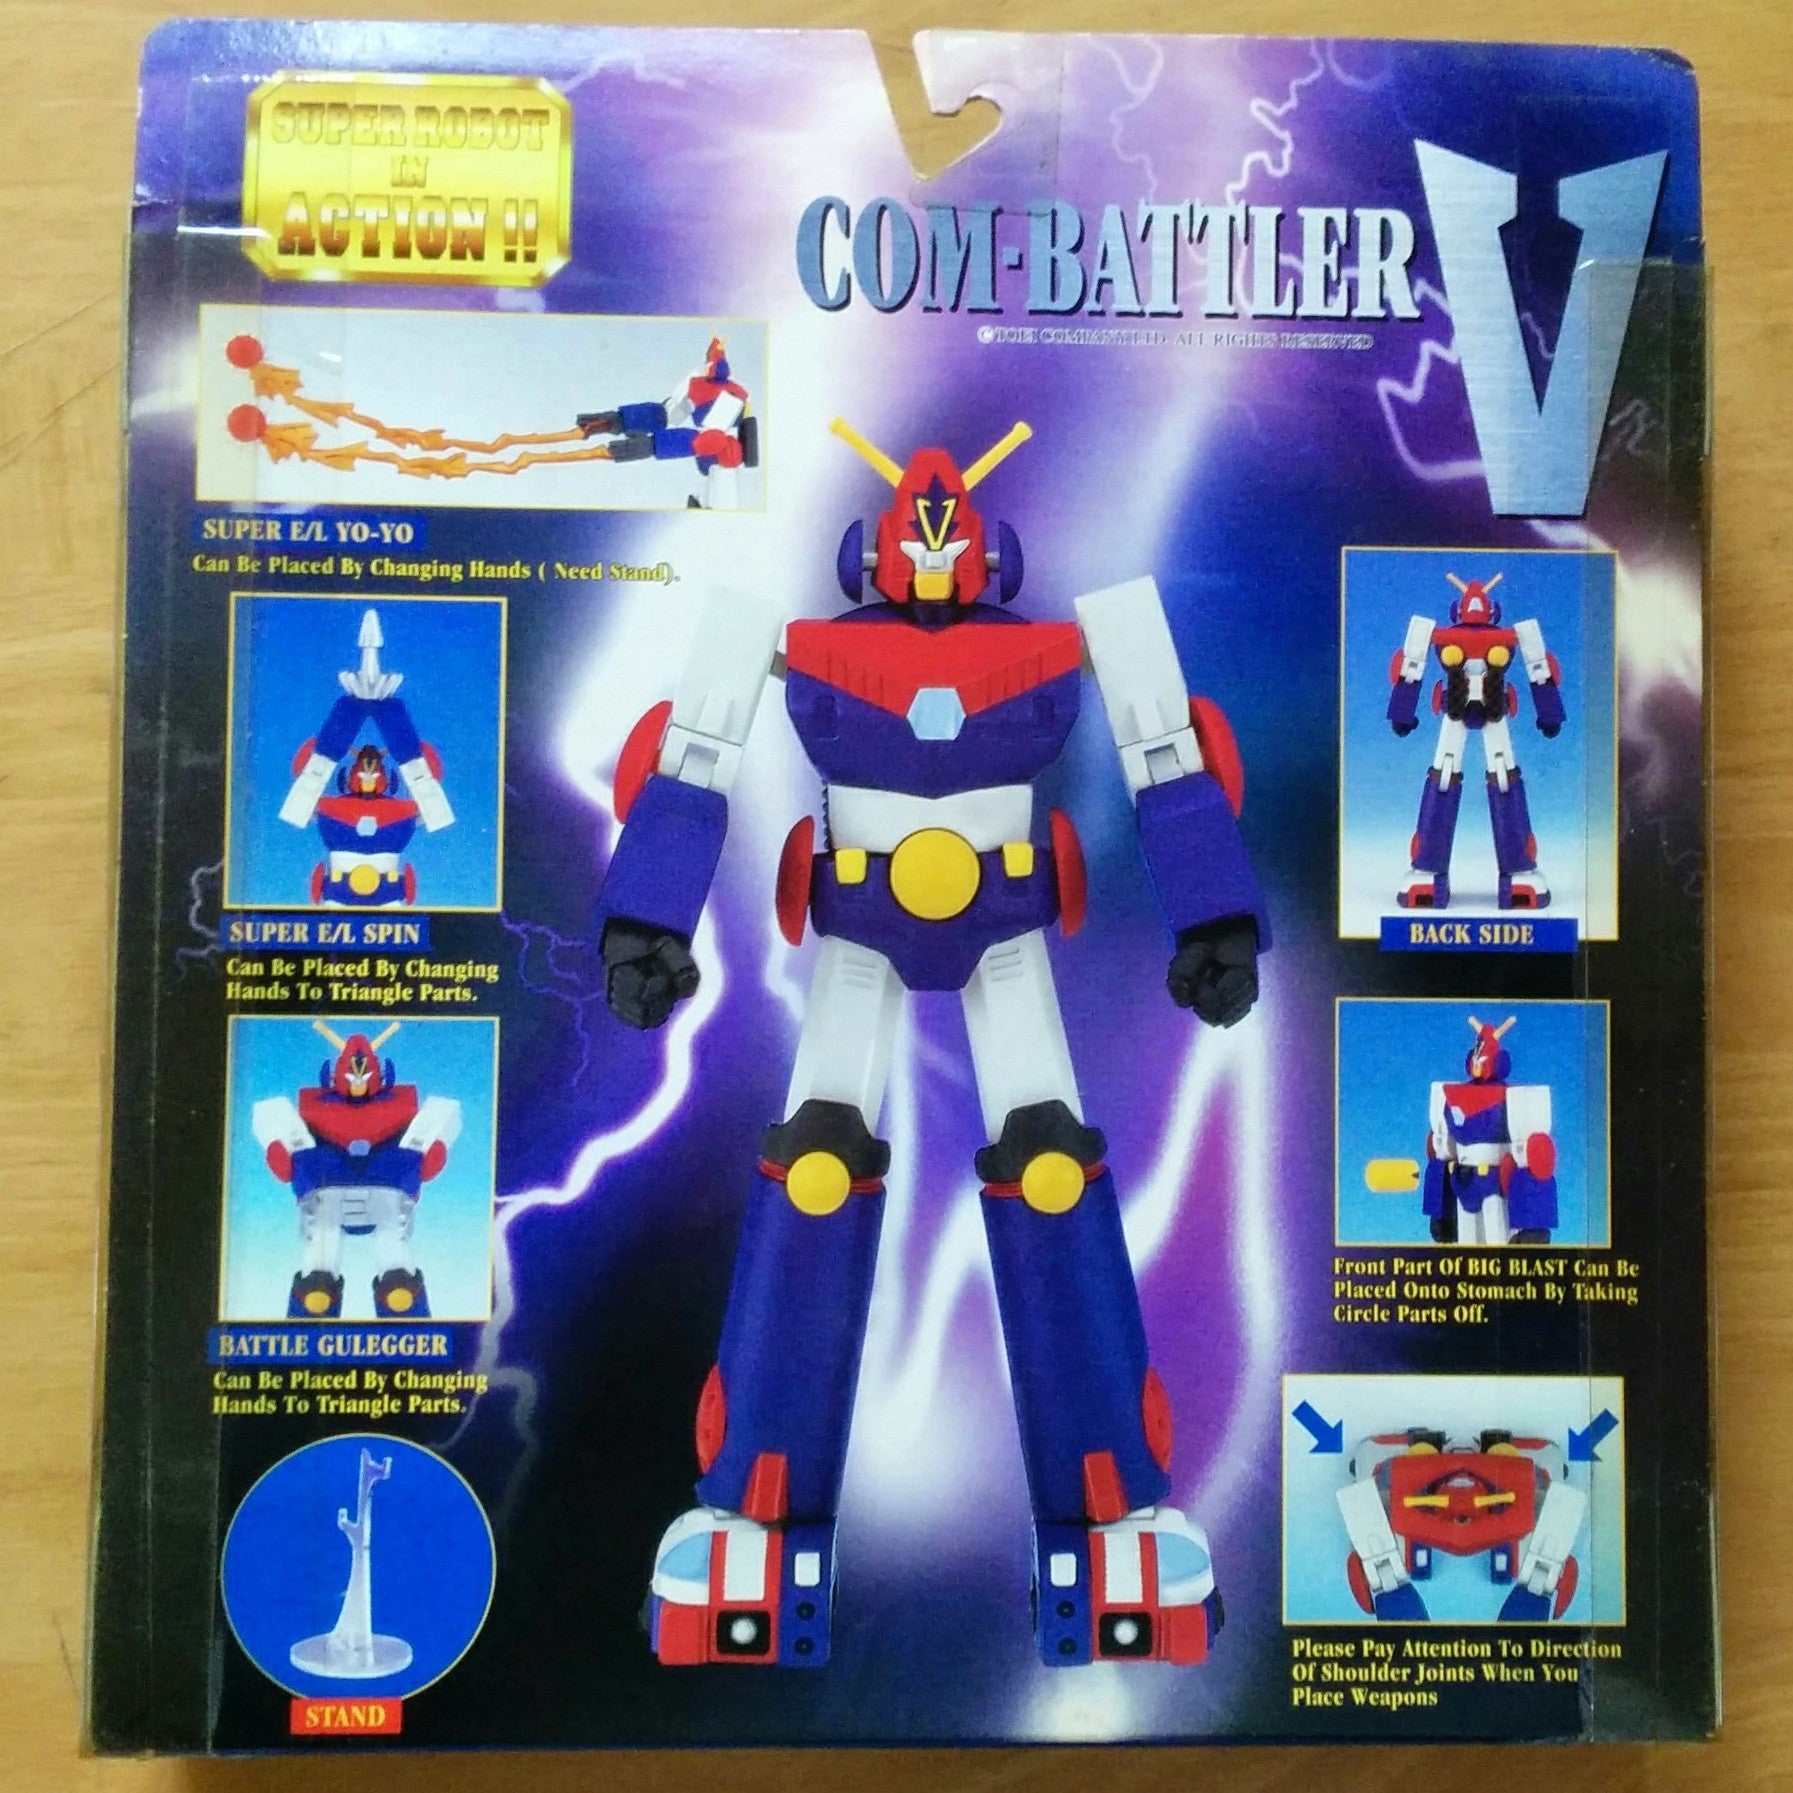 Bandai 1999 Super Robot In Action Com-Battler Combattler V Action Figure - Lavits Figure
 - 2